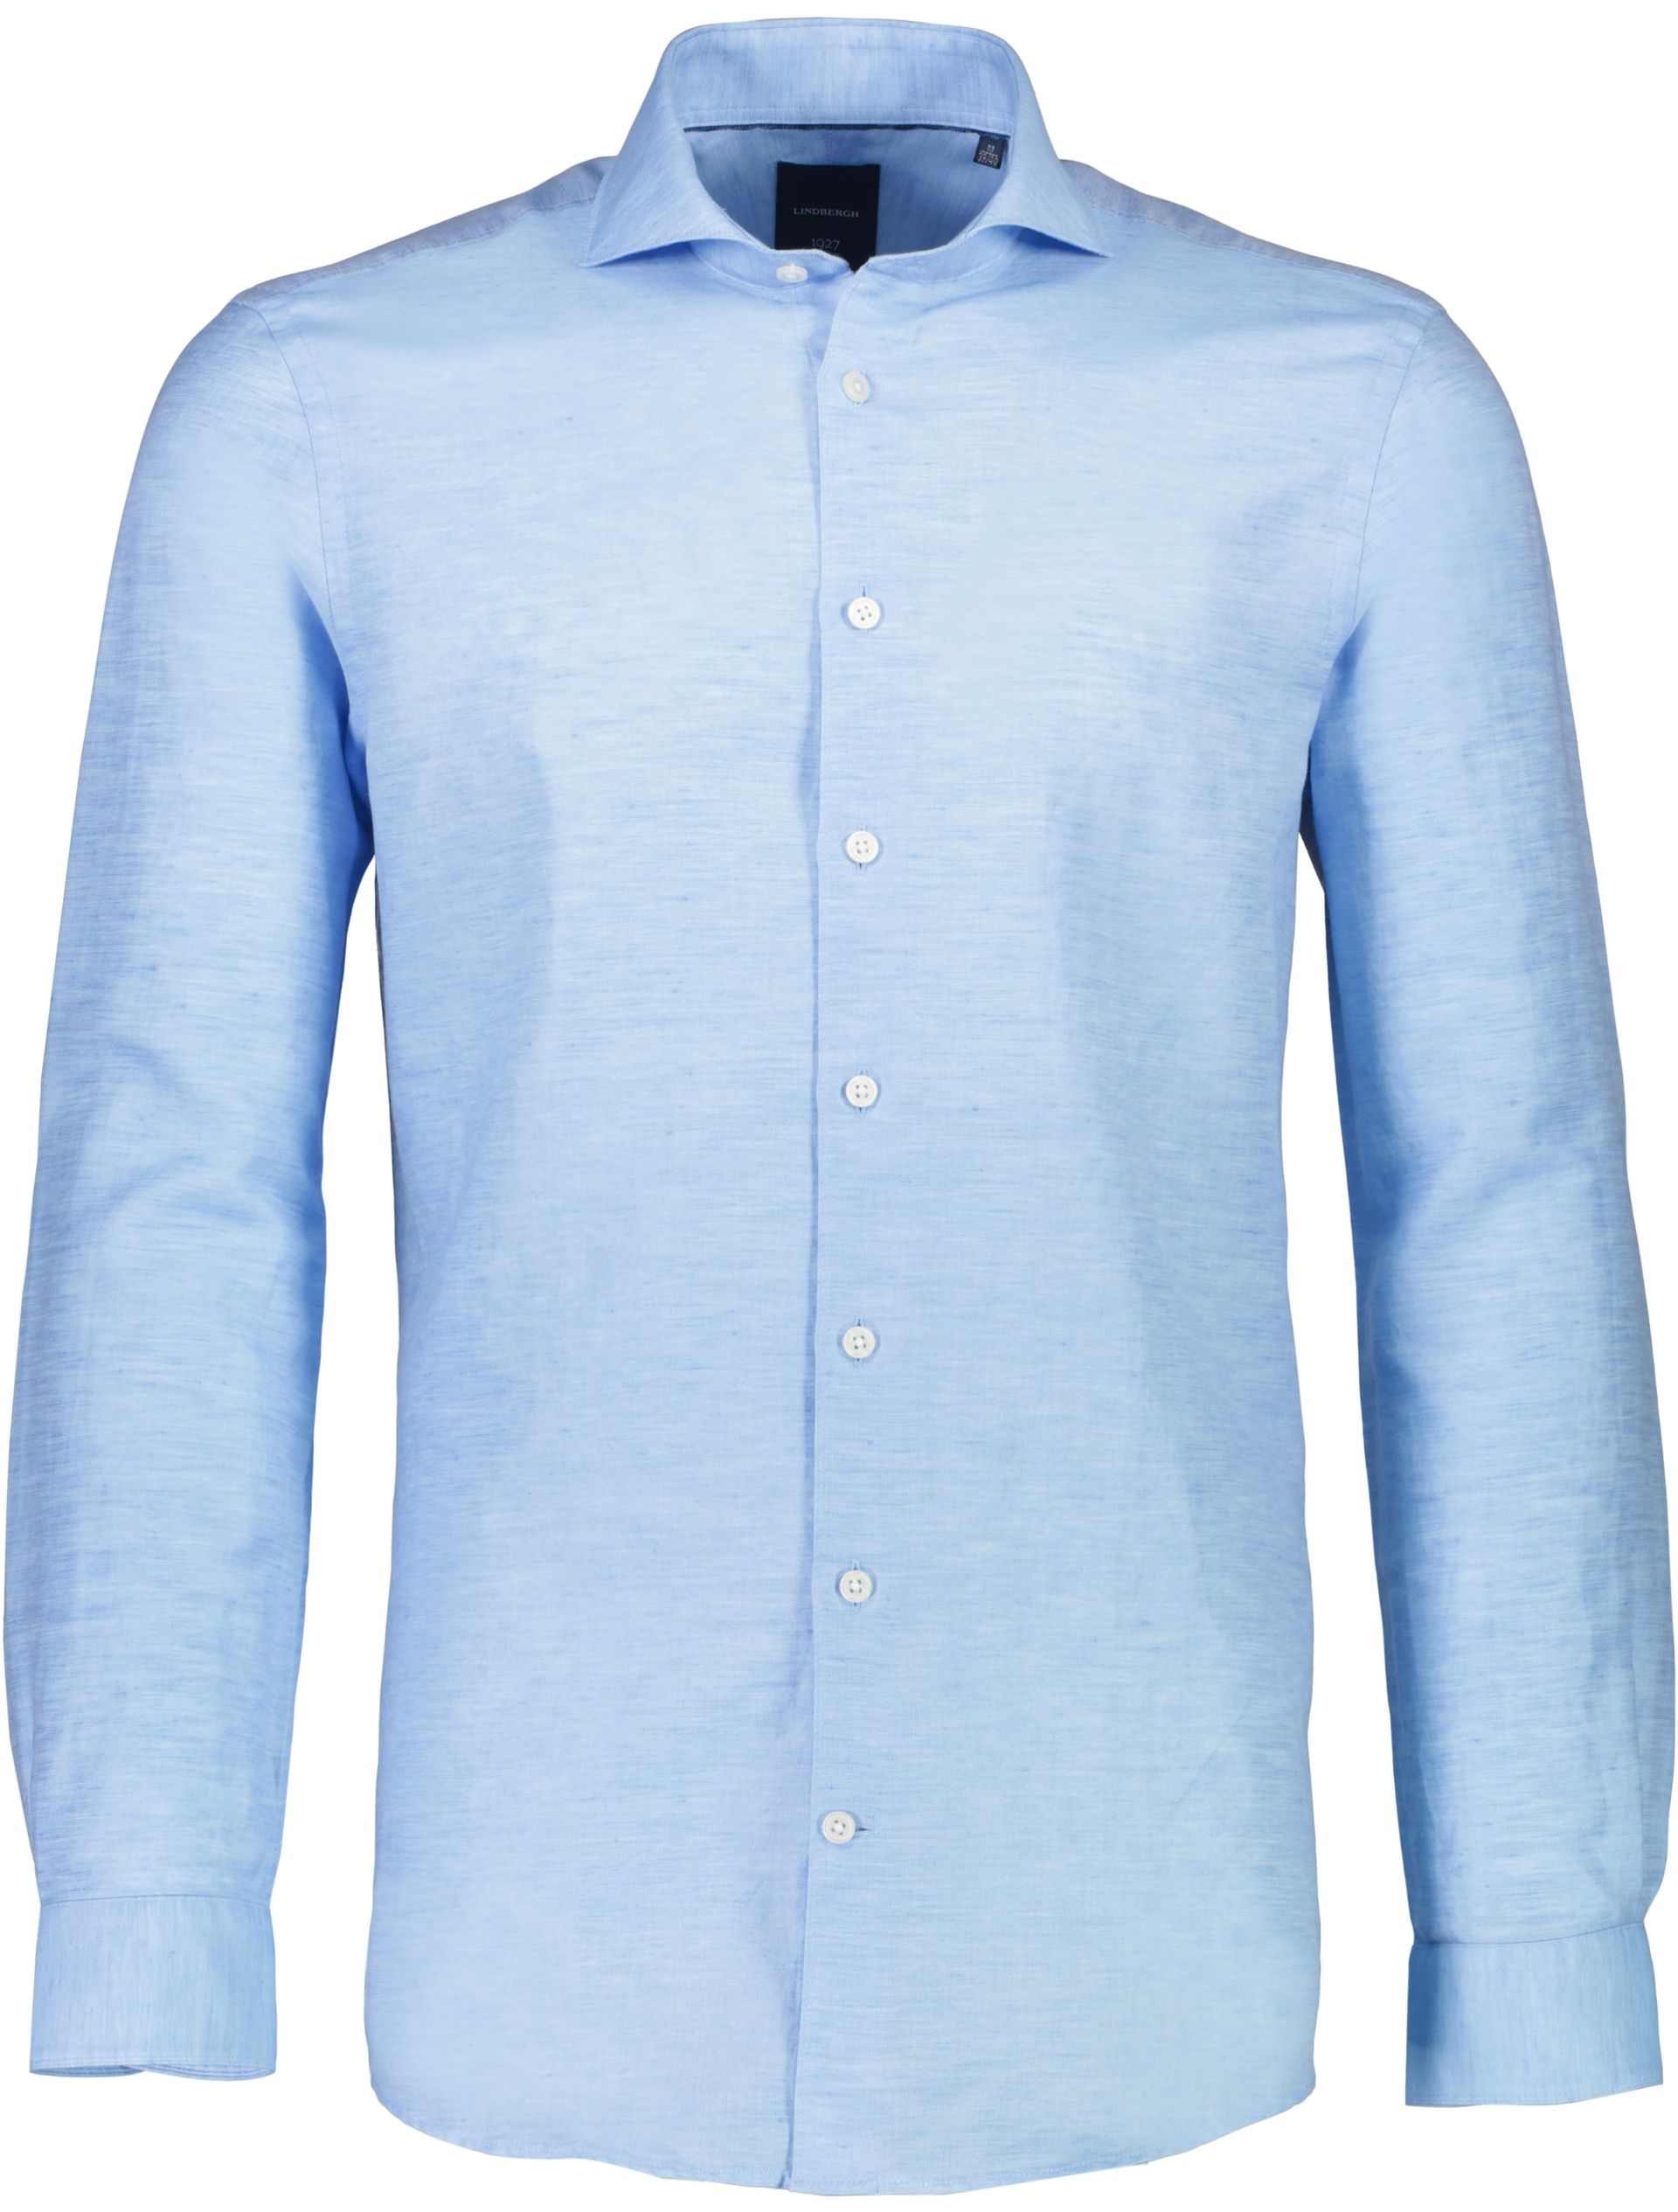 Lindbergh Linen shirt blue / light blue